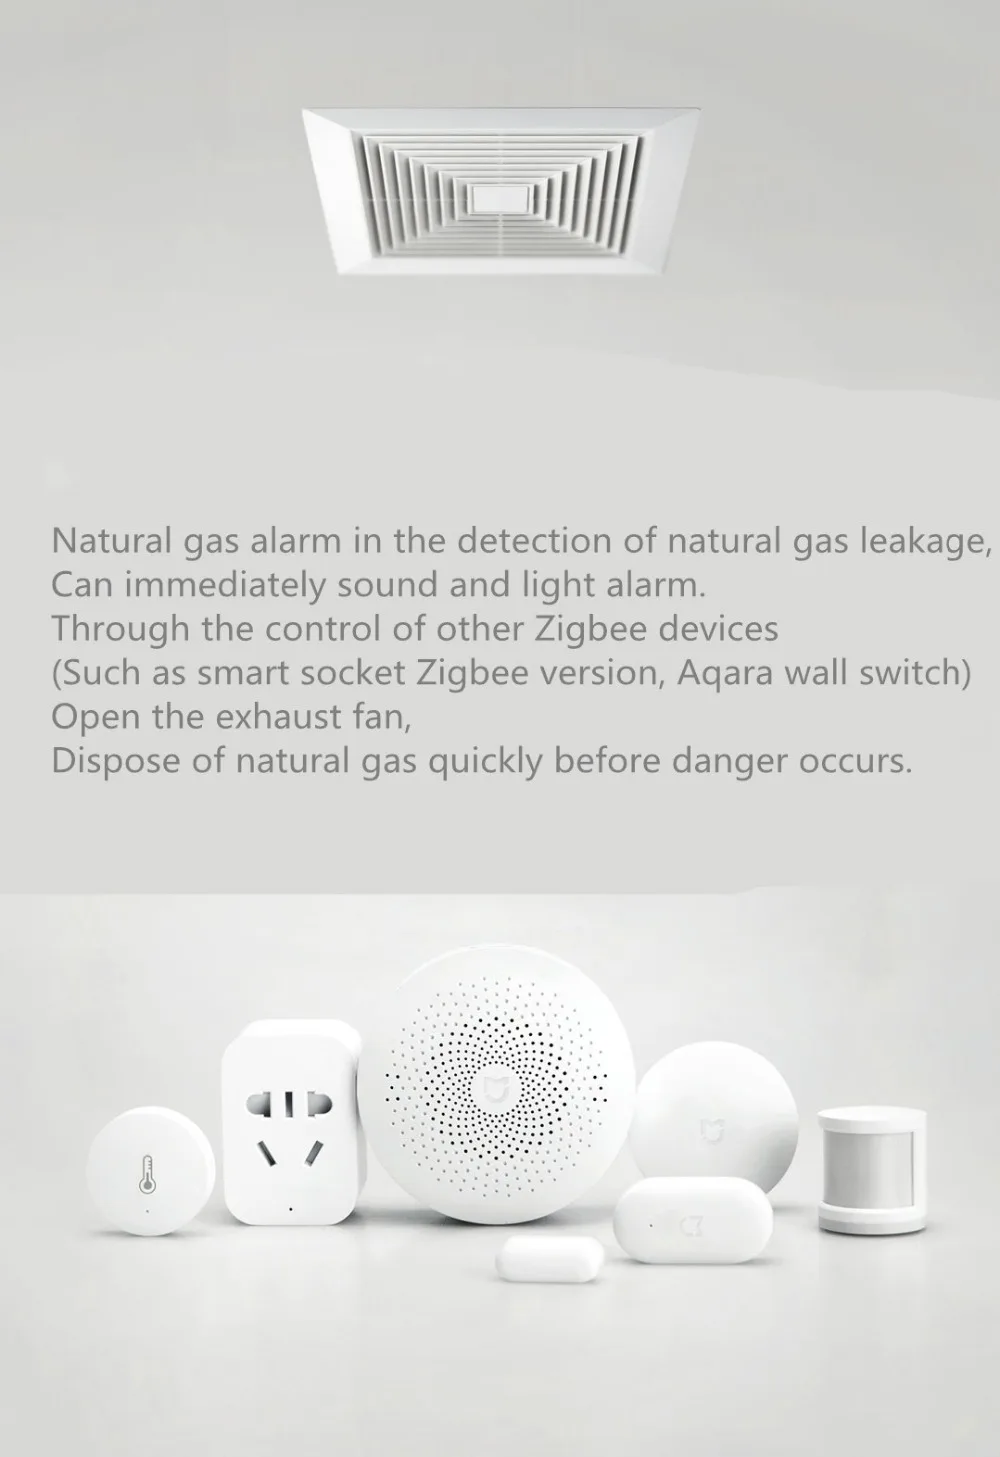 Xiaomi Honeywell детектор газа сигнализации, Aqara Zigbee пульт дистанционного управления CH4 мониторинг потолка и настенный легко установить работу приложение Mijia